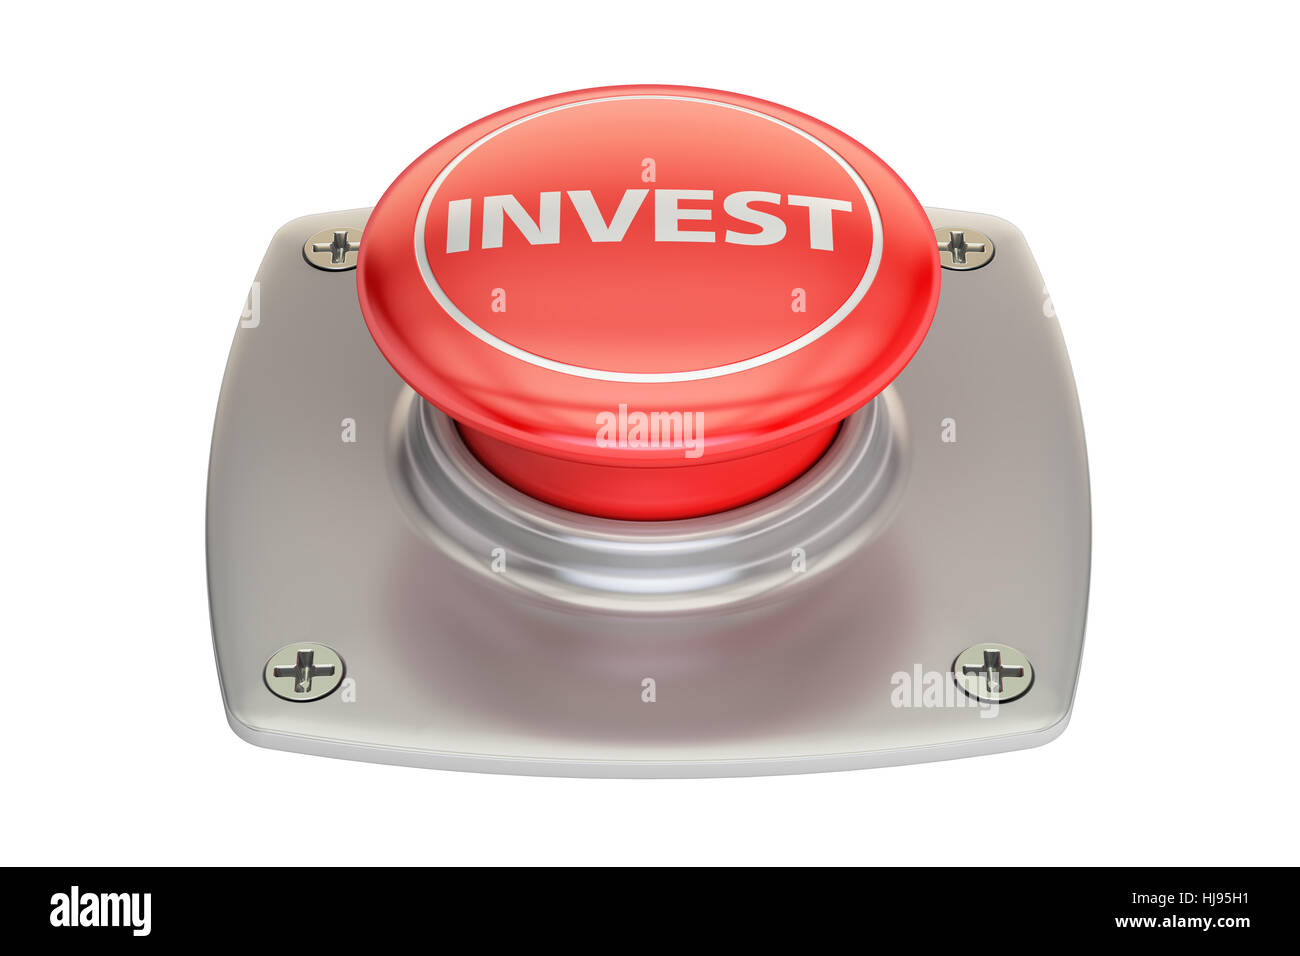 Investir bouton rouge, rendu 3D isolé sur fond blanc Banque D'Images